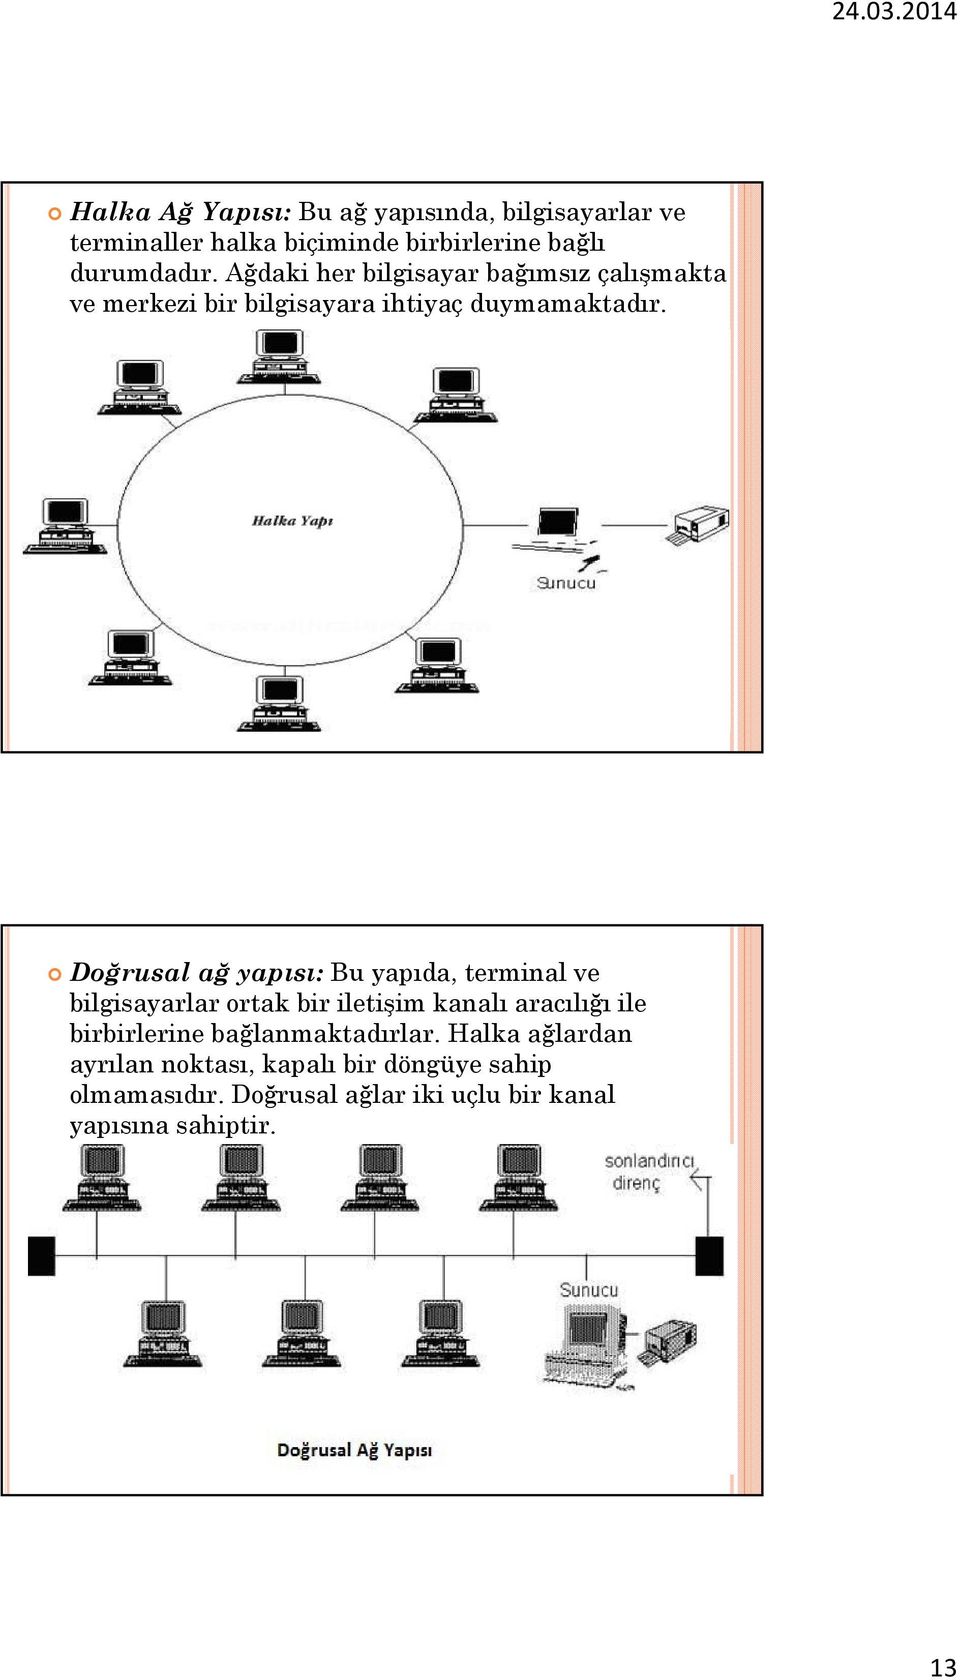 Doğrusal ağ yapısı: Bu yapıda, terminal ve bilgisayarlar ortak bir iletişim kanalı aracılığı ile birbirlerine